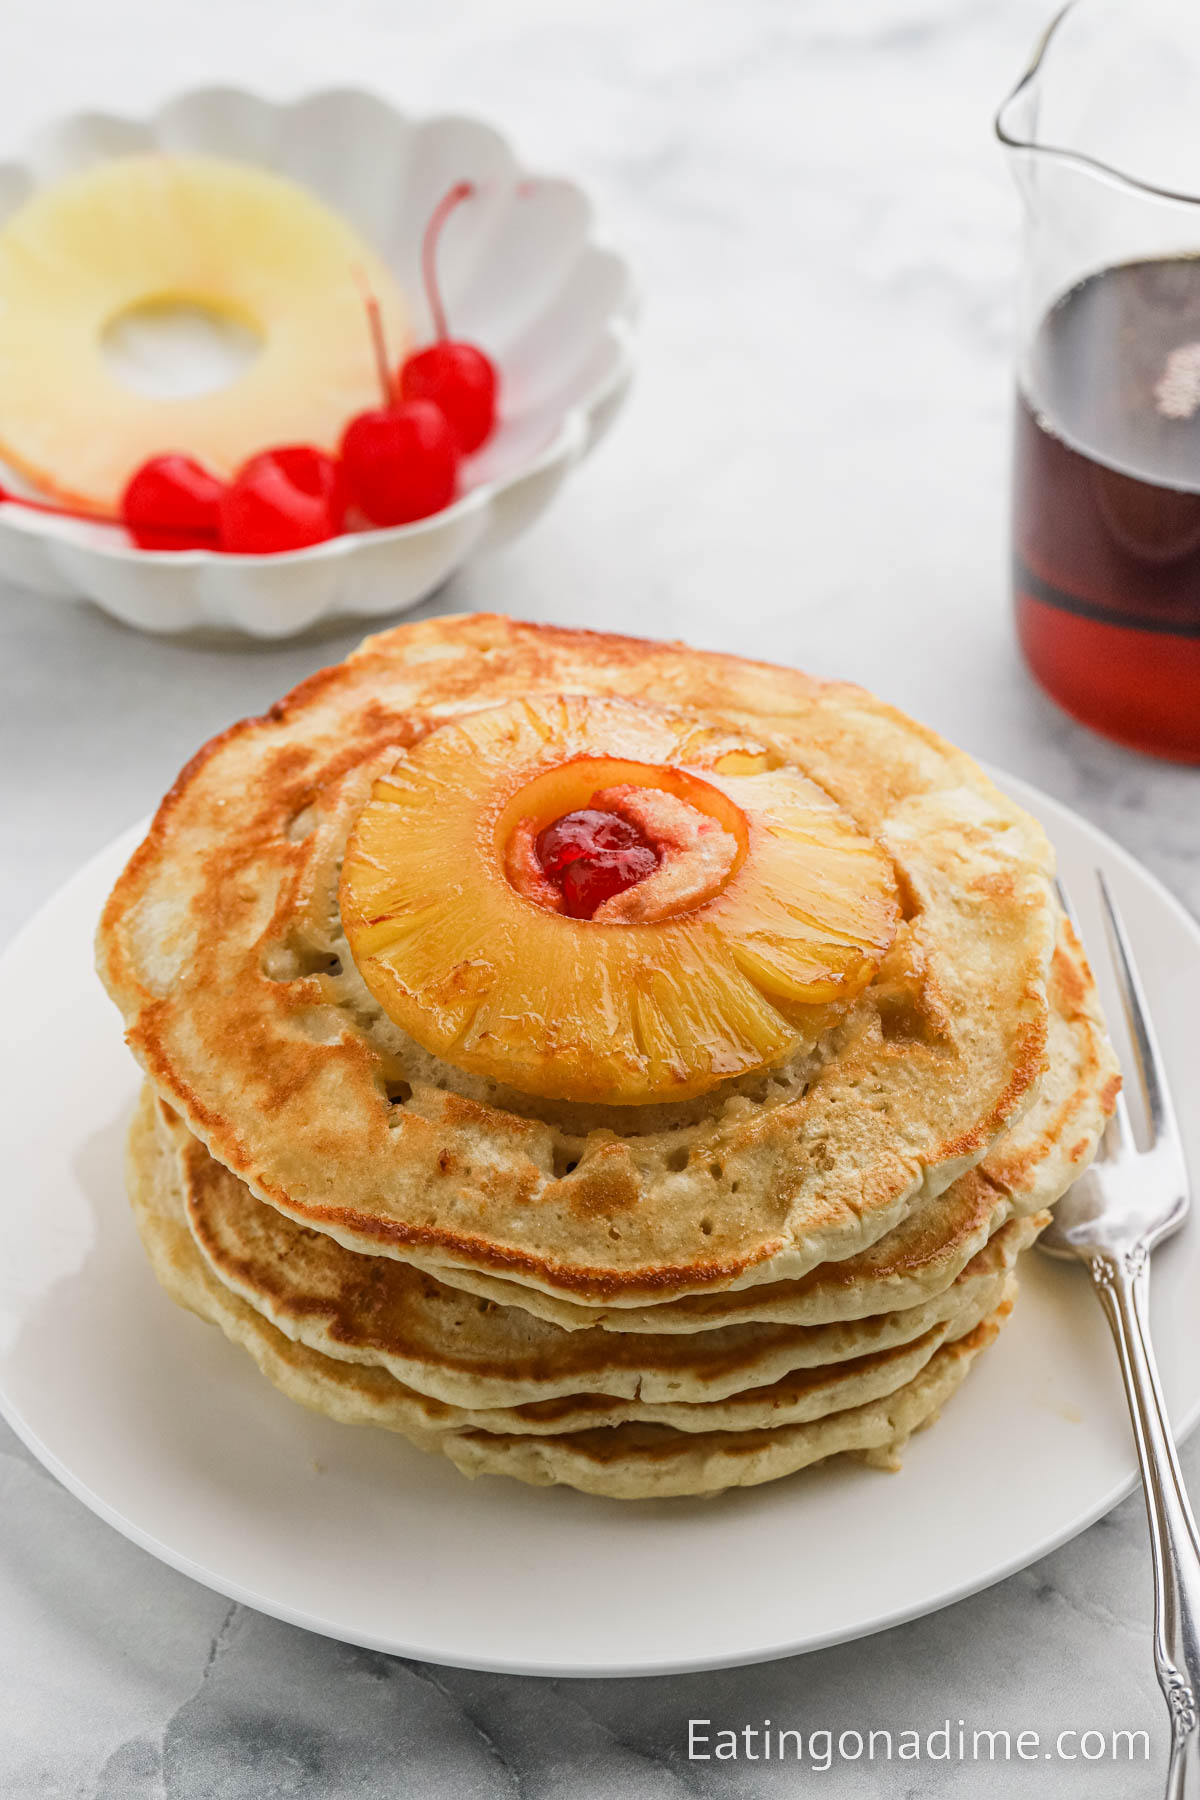 https://www.eatingonadime.com/wp-content/uploads/2023/08/00-300KB-Pineapple-Upside-Down-Pancakes-8.jpg